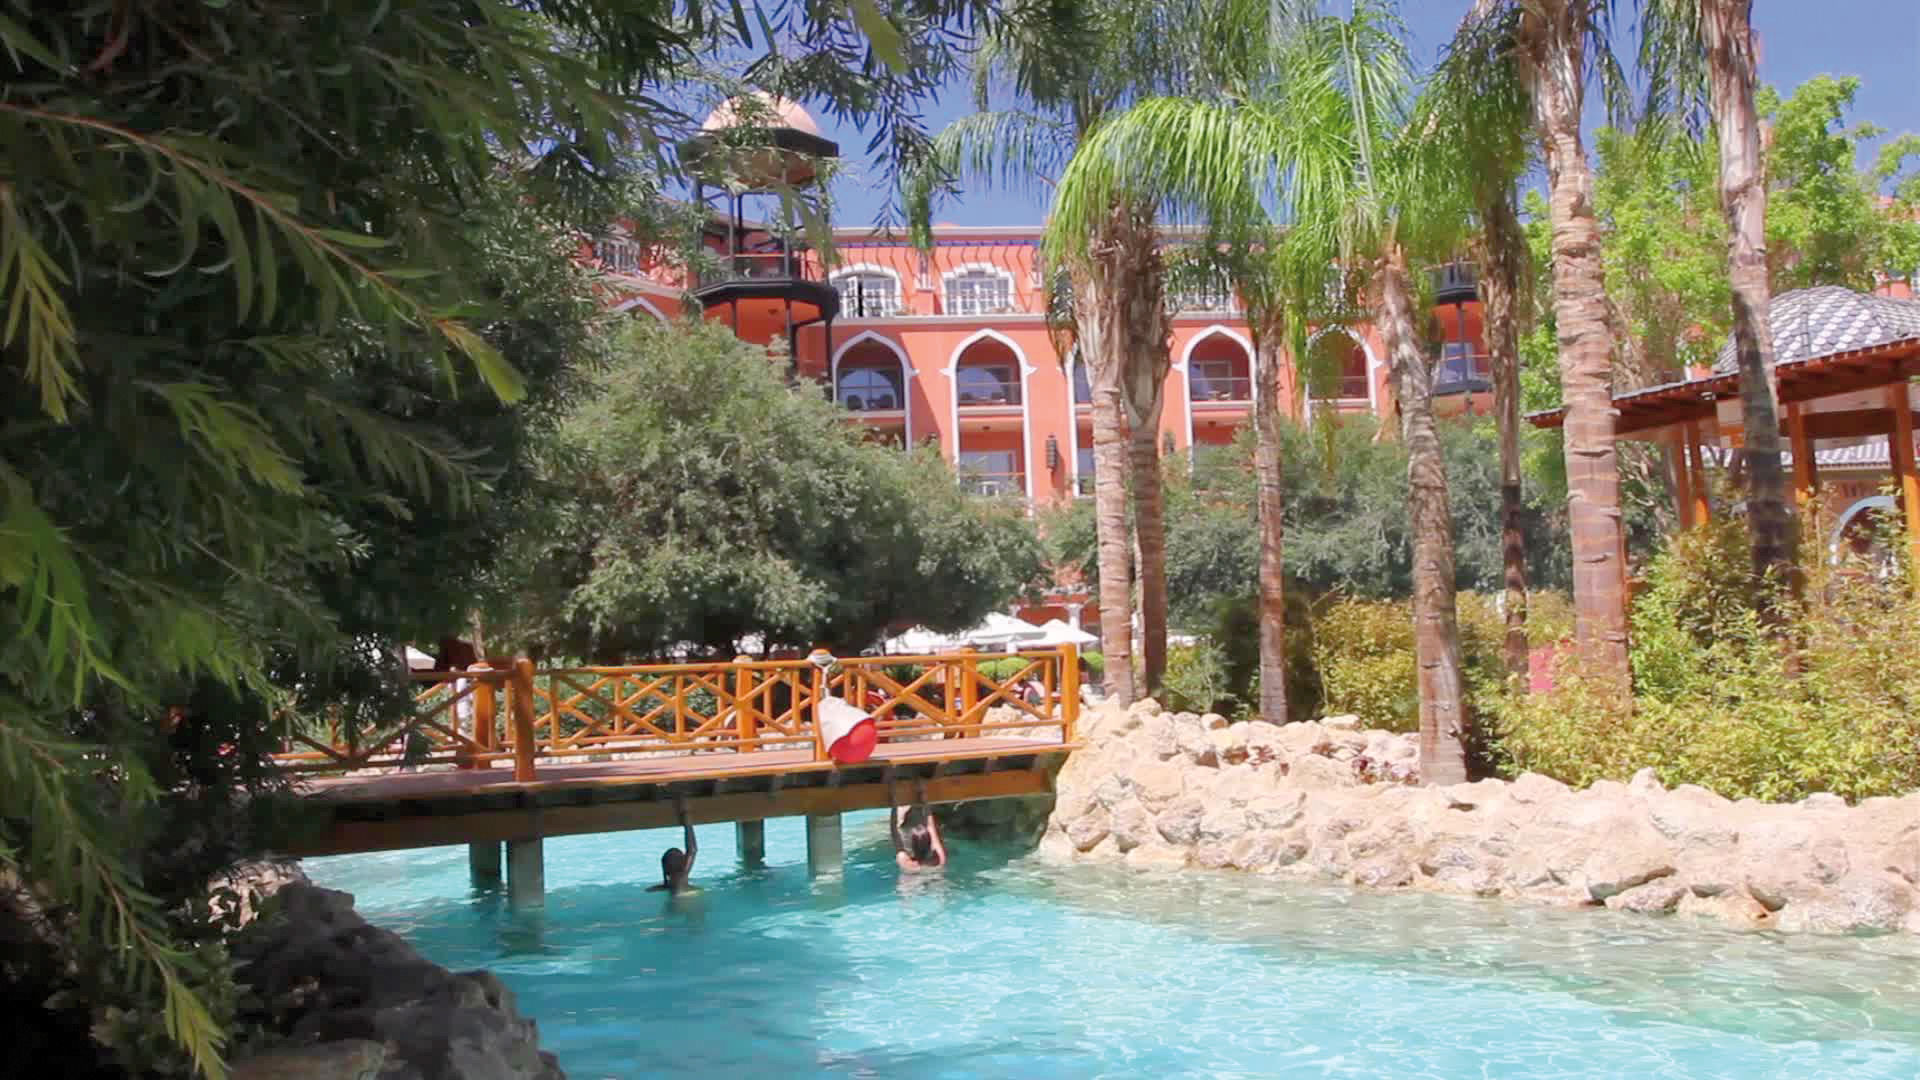 The Grand Resort, Hurghada